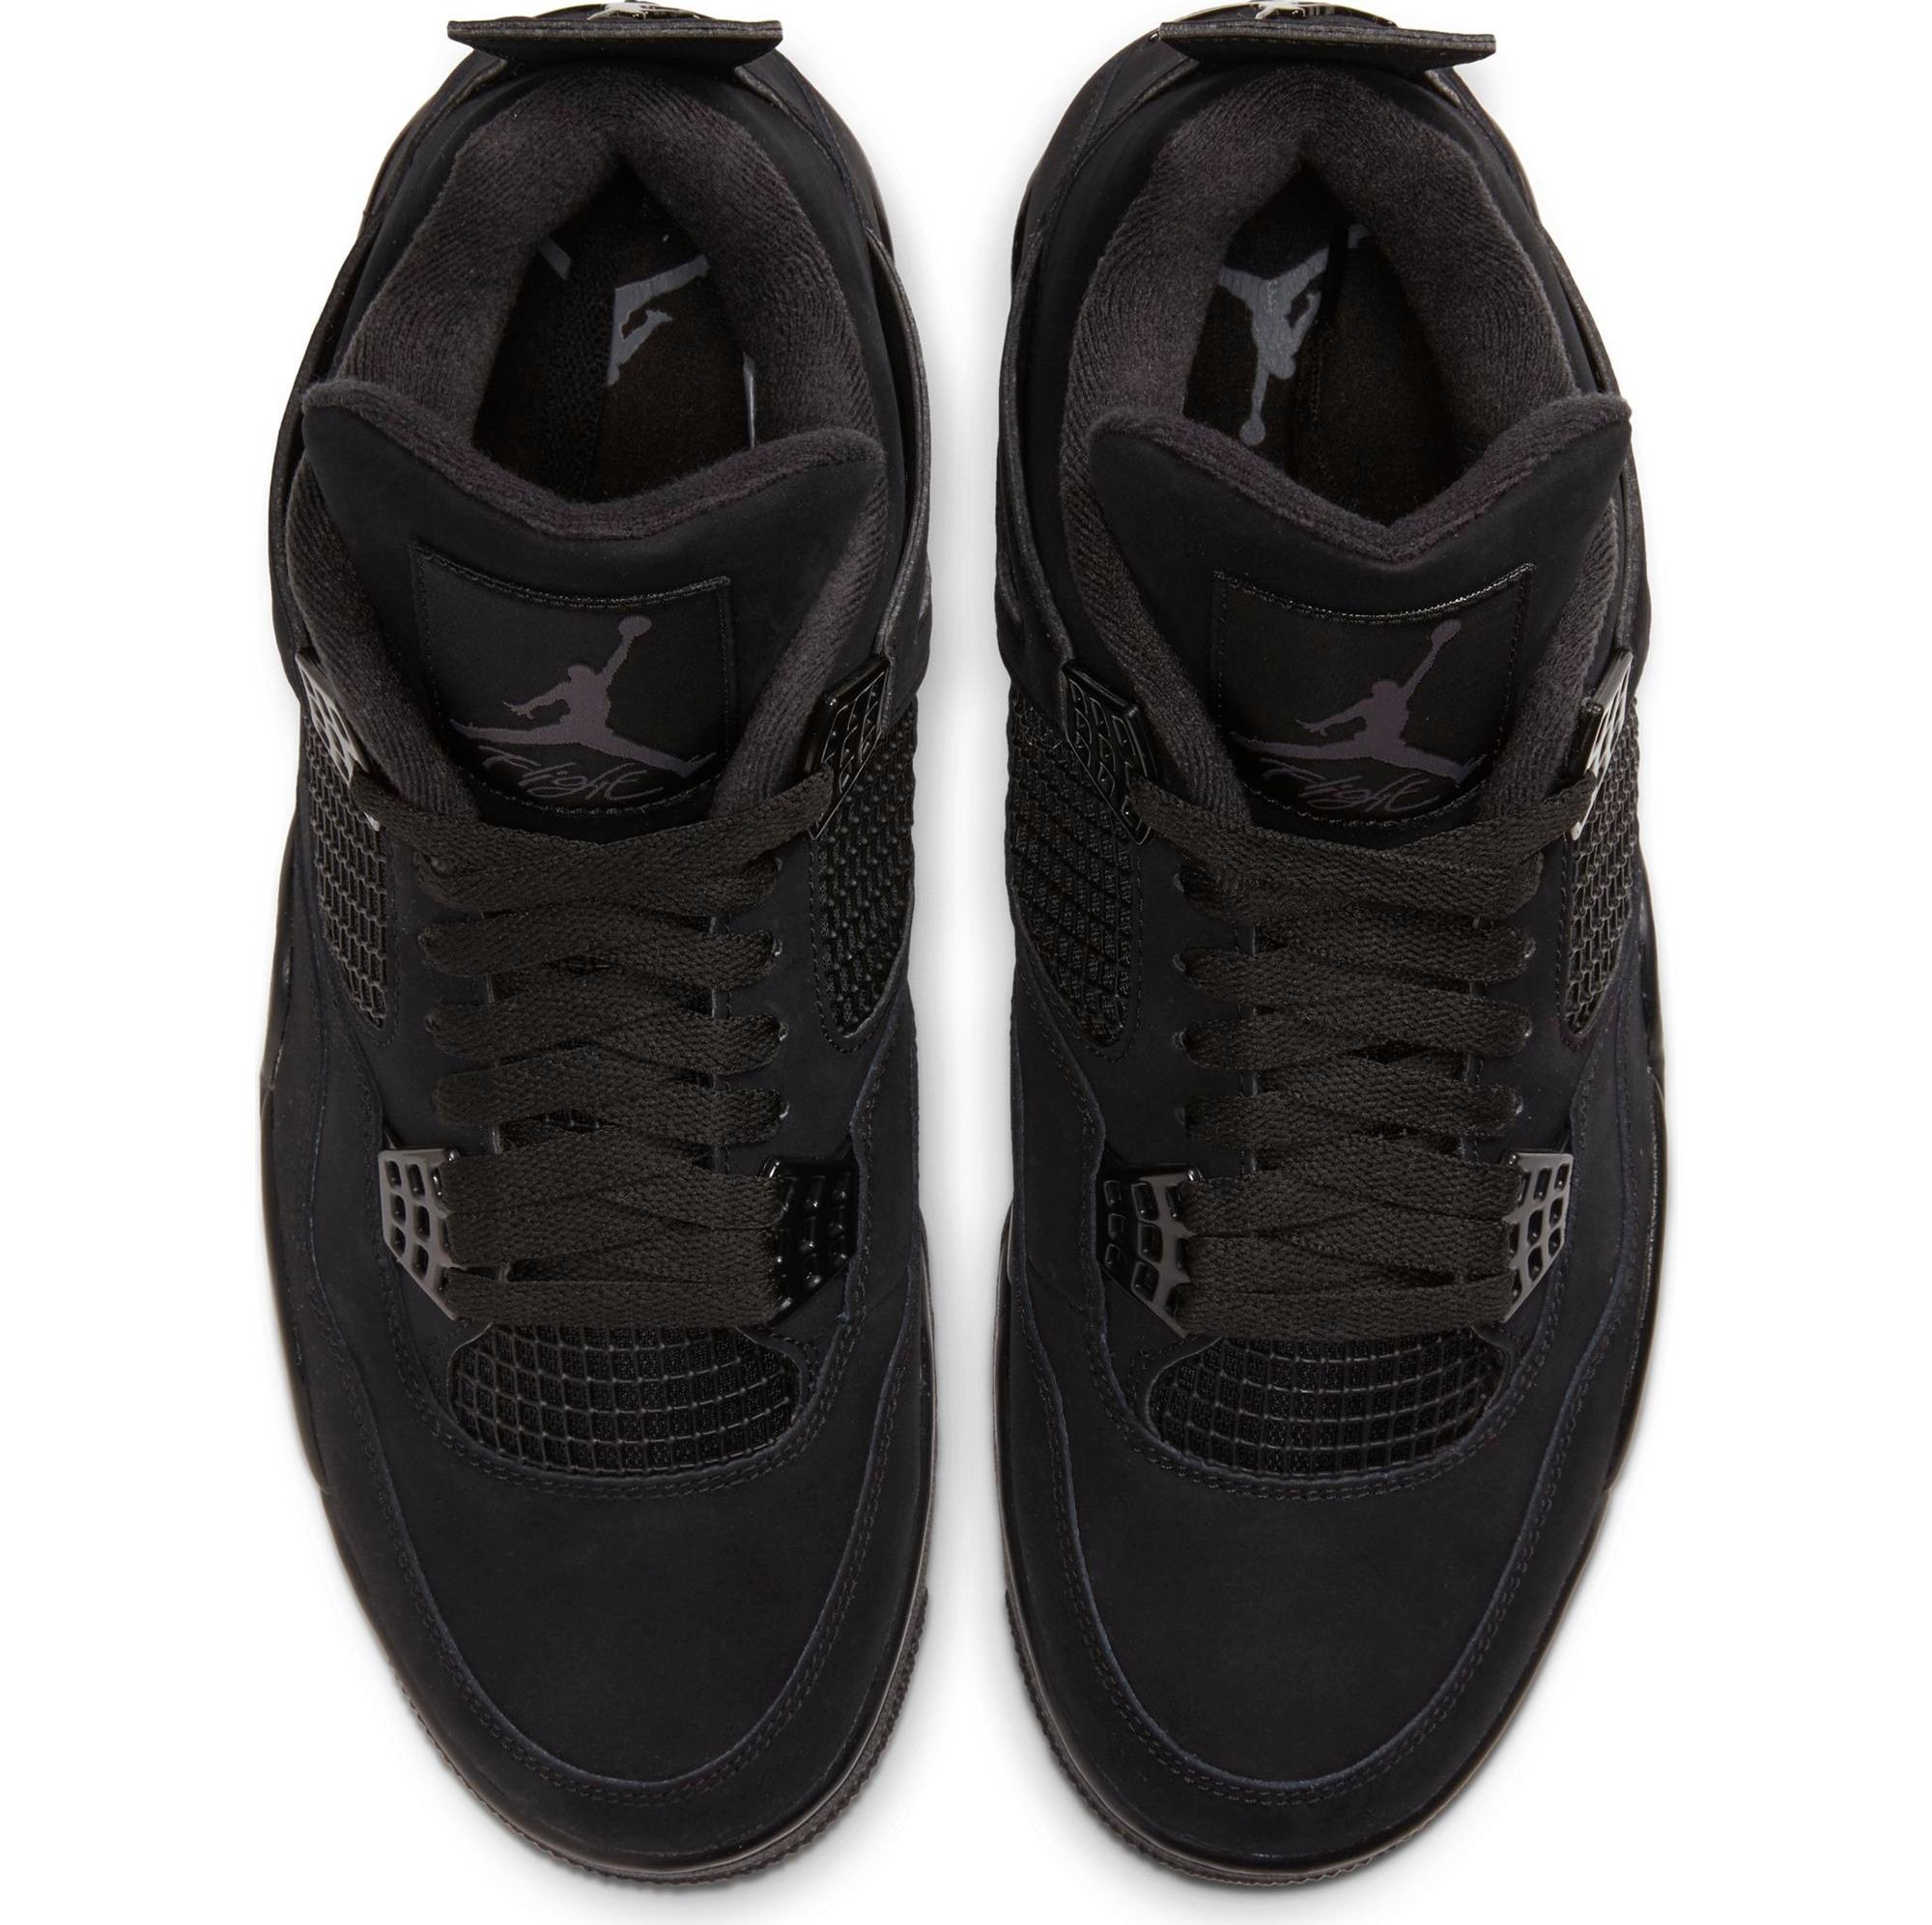 Sneakers Release – Air Jordan 4 Retro “Black Cat” Black/Black-Light  Graphite Colorway